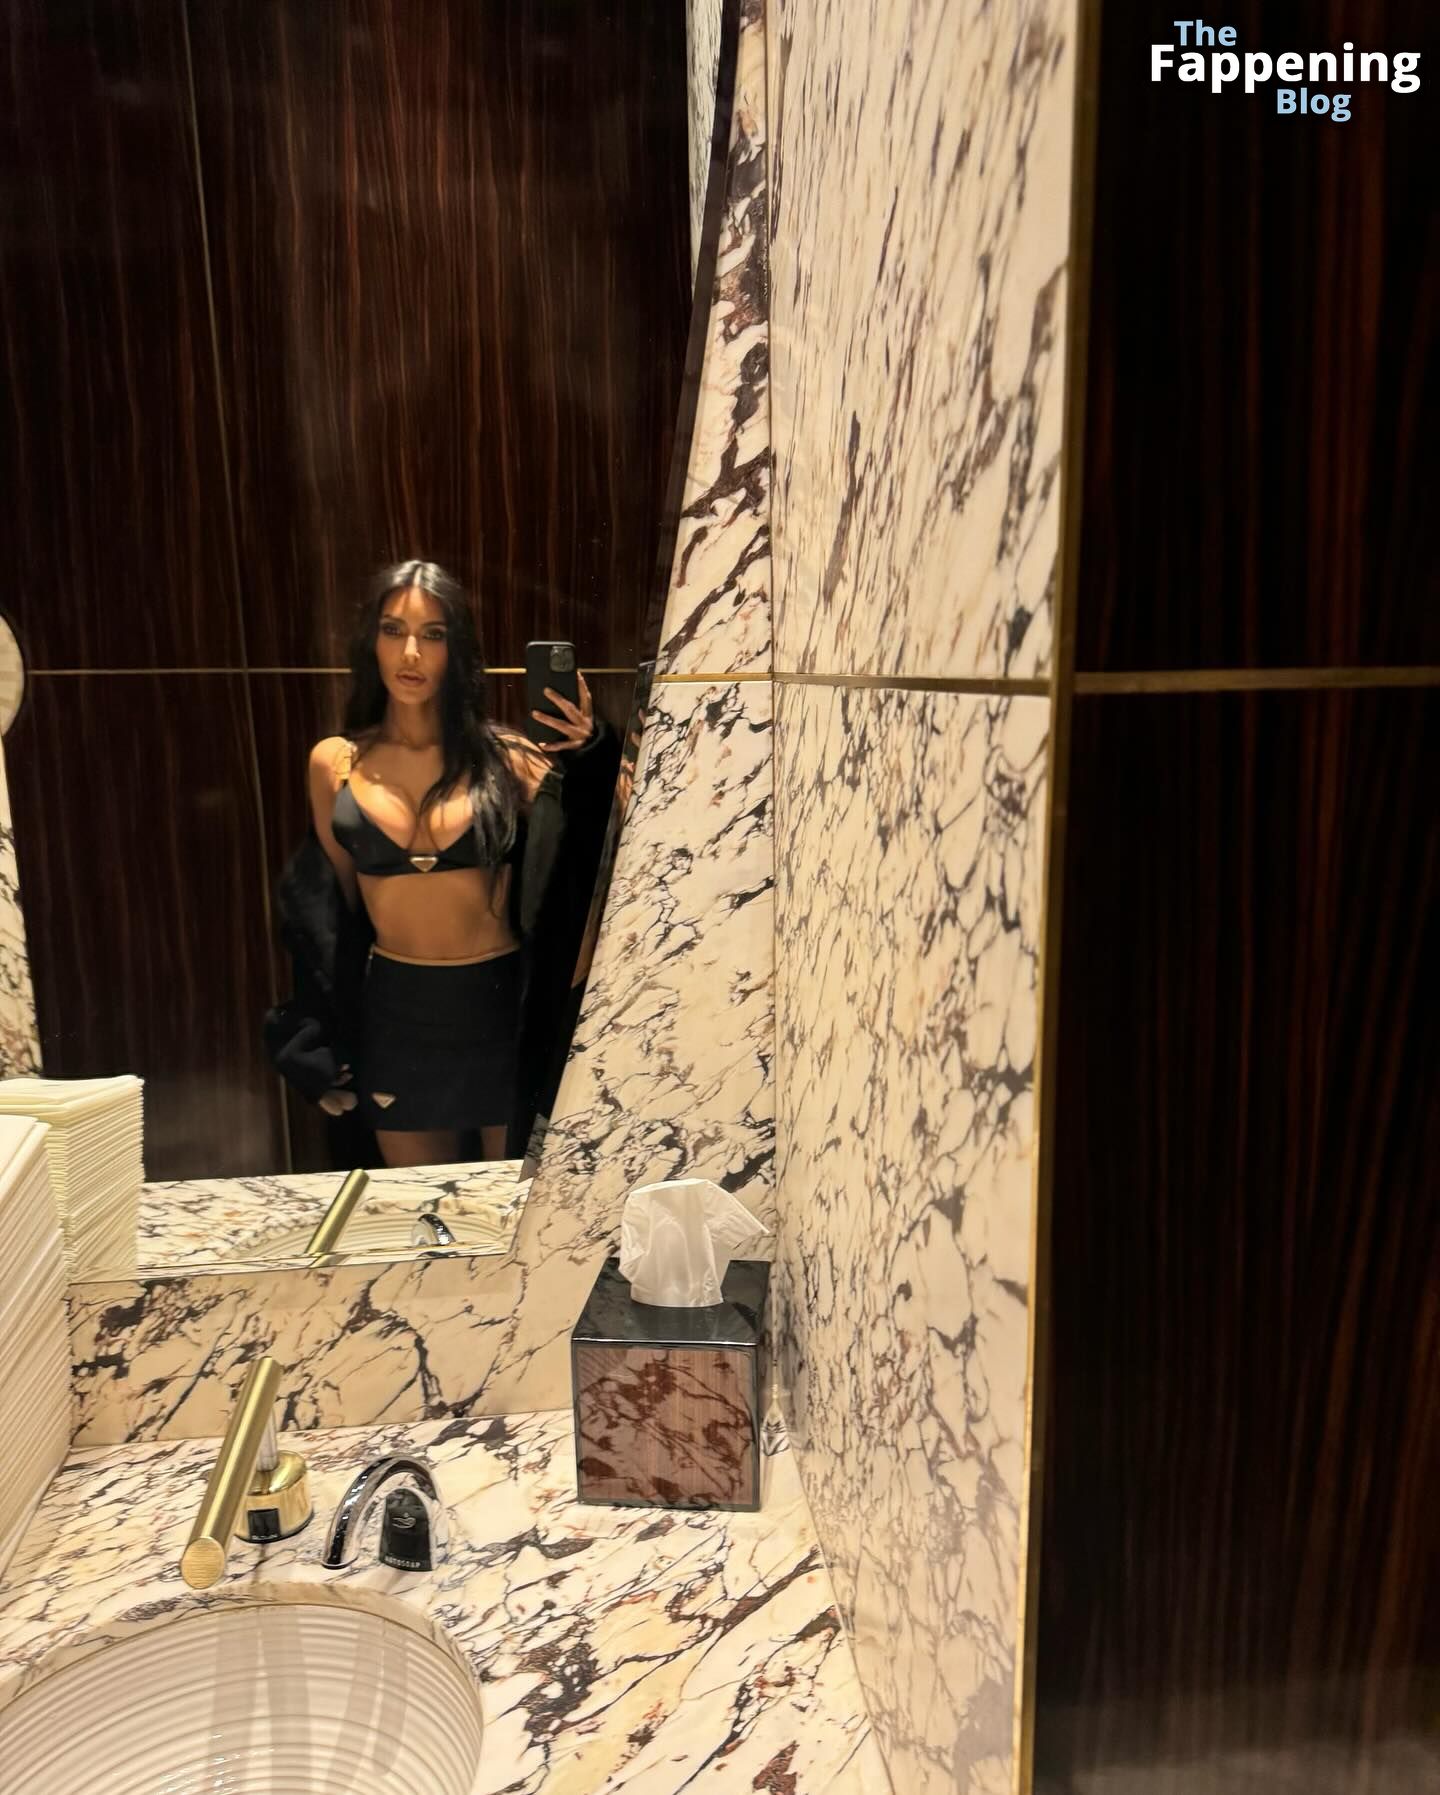 Kim-Kardashian-Sexy-1-The-Fappening-Blog-1.jpg